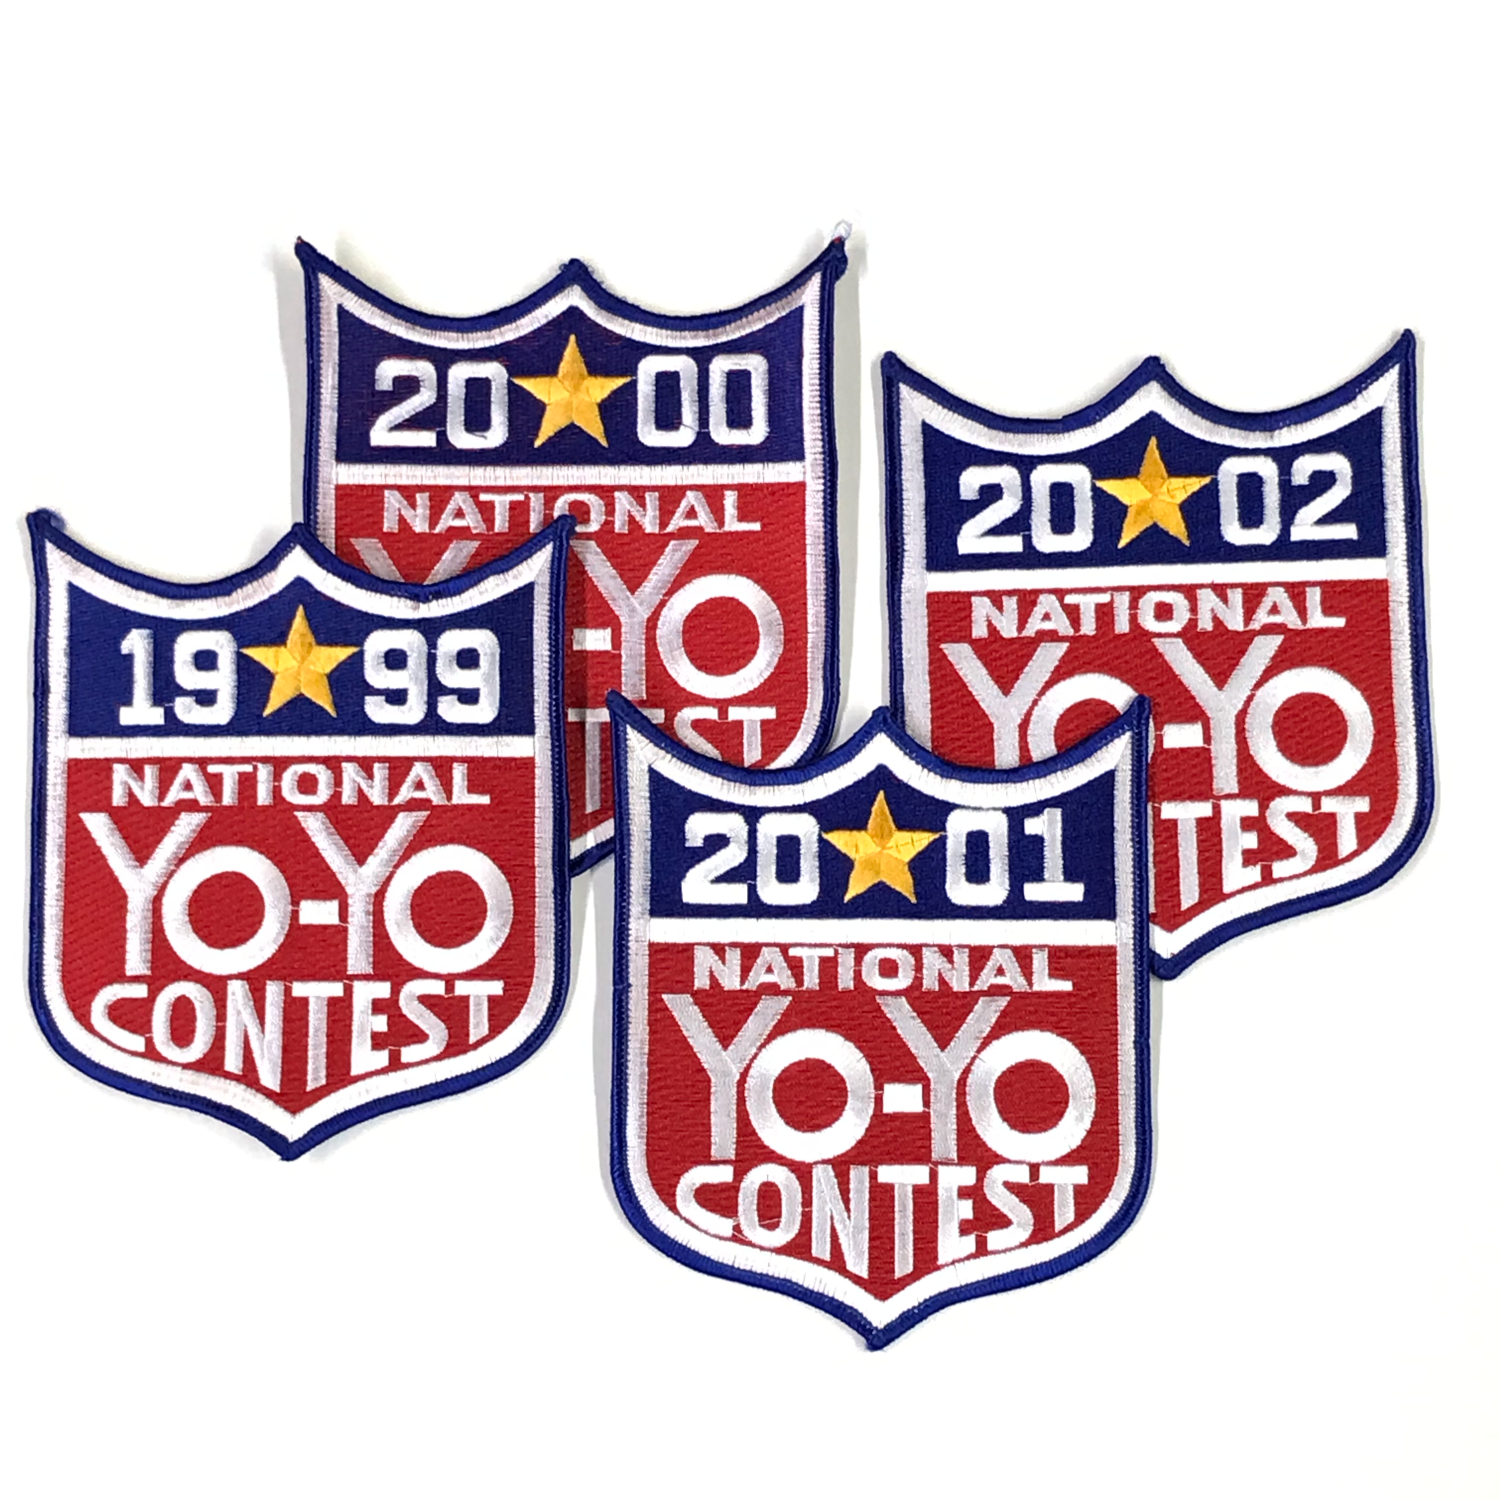 National Yo-Yo Contest Patch 6 inch    